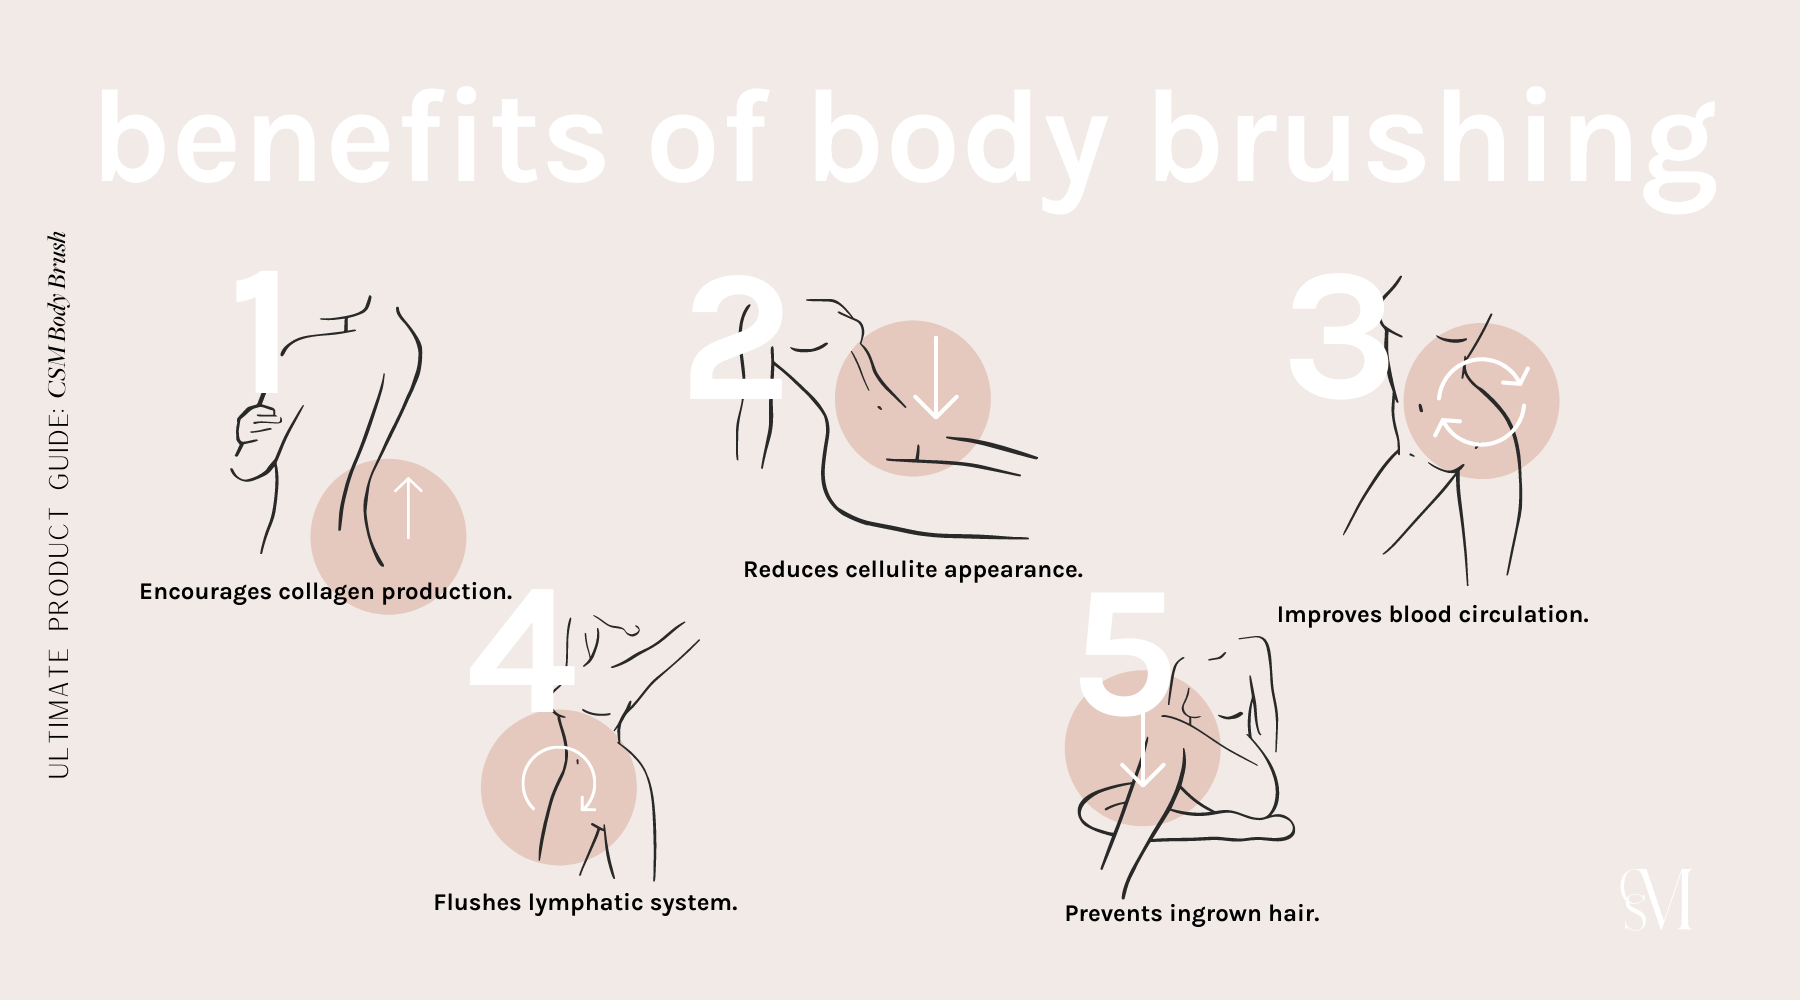 The wonderful benefits of body brushing. 